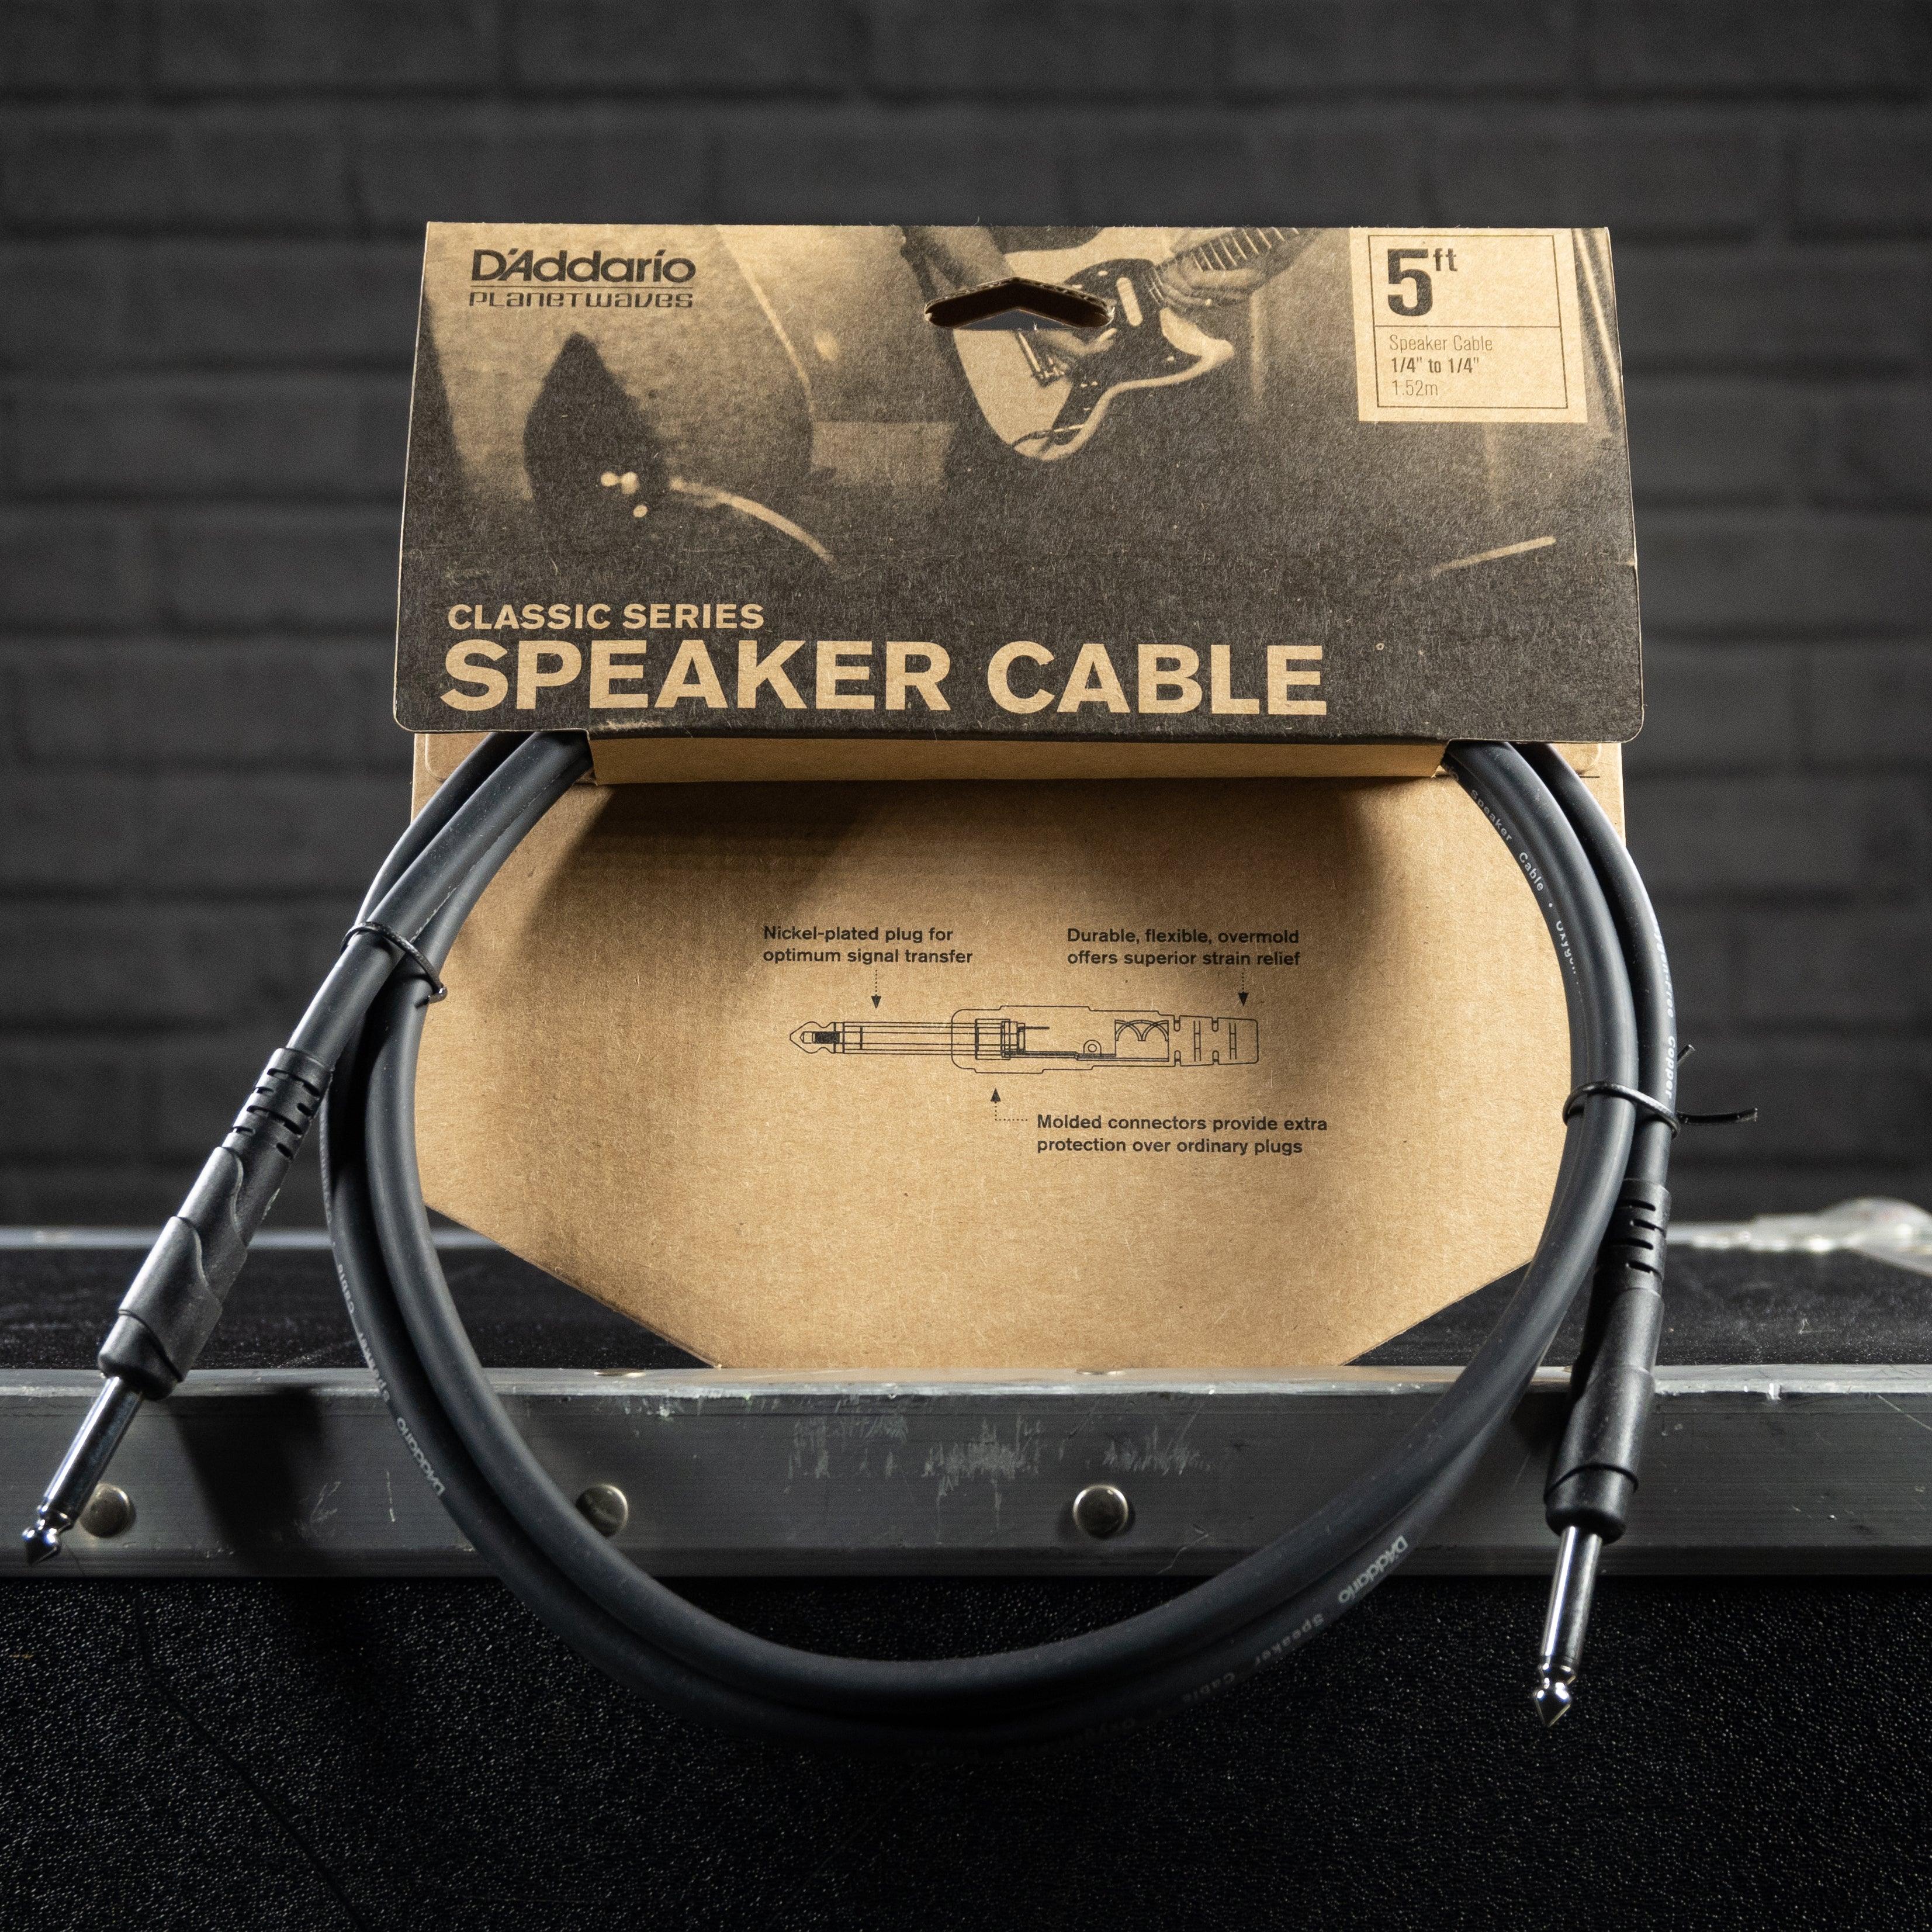 D’addario Classic Series Speaker Cable 5ft. - Impulse Music Co.